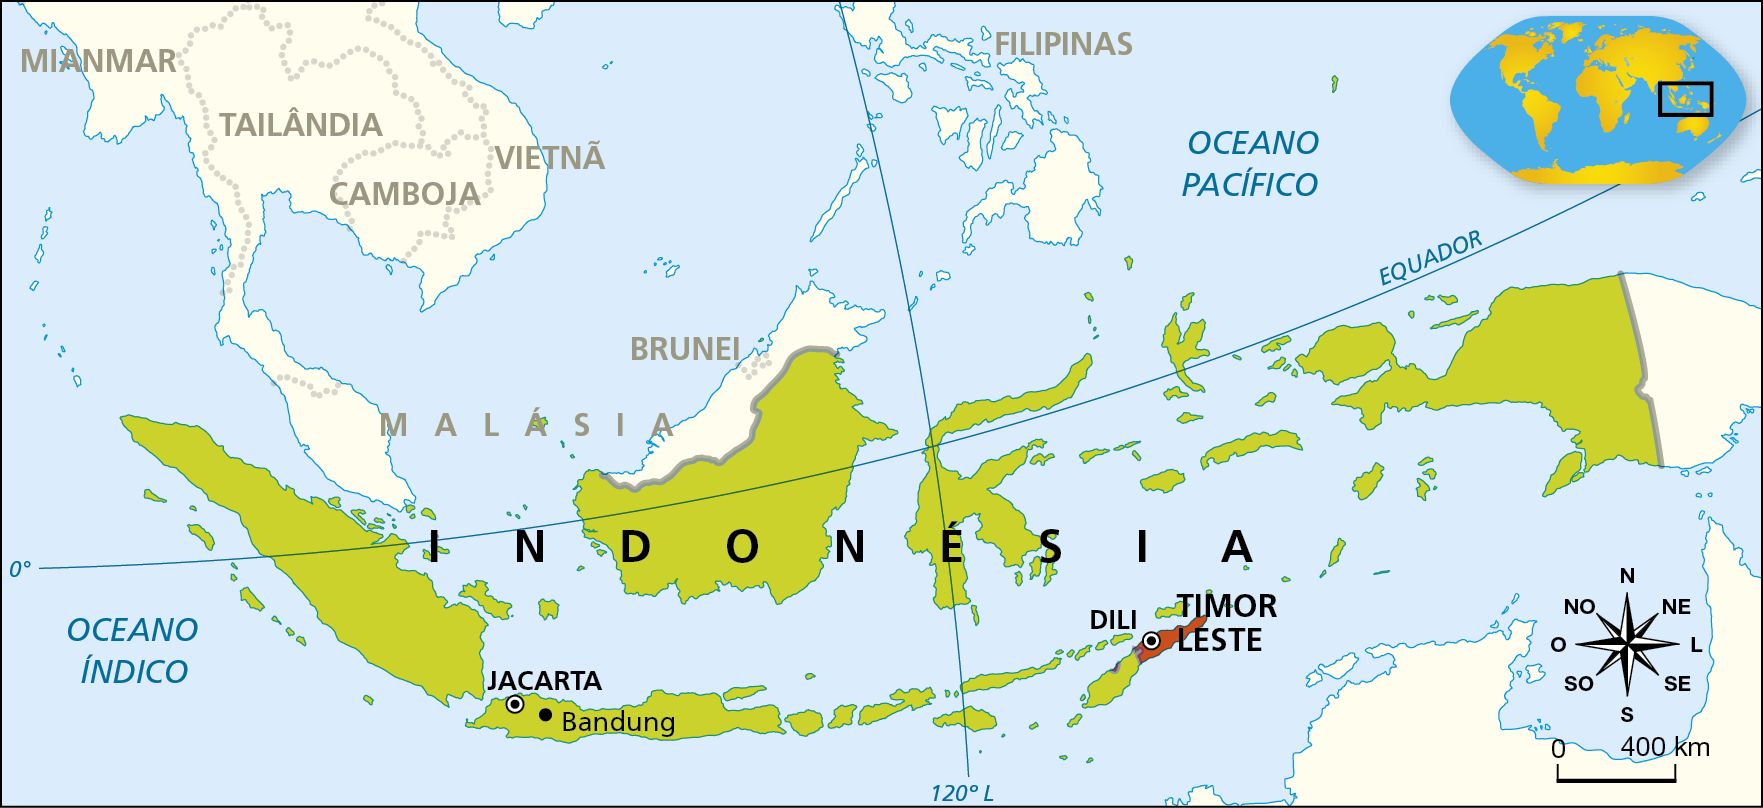 Mapa. Indonésia e Timor Leste.
O mapa não apresenta legenda.
Em verde, estão destacados os territórios da Indonésia, com capital em Jacarta e tendo Bandung como uma das cidades importantes do arquipélago. Em vermelho, está destacado o Timor Leste, com capital em Dili.
Na parte inferior direita, rosa dos ventos e escala de 0 a 400 quilômetros.